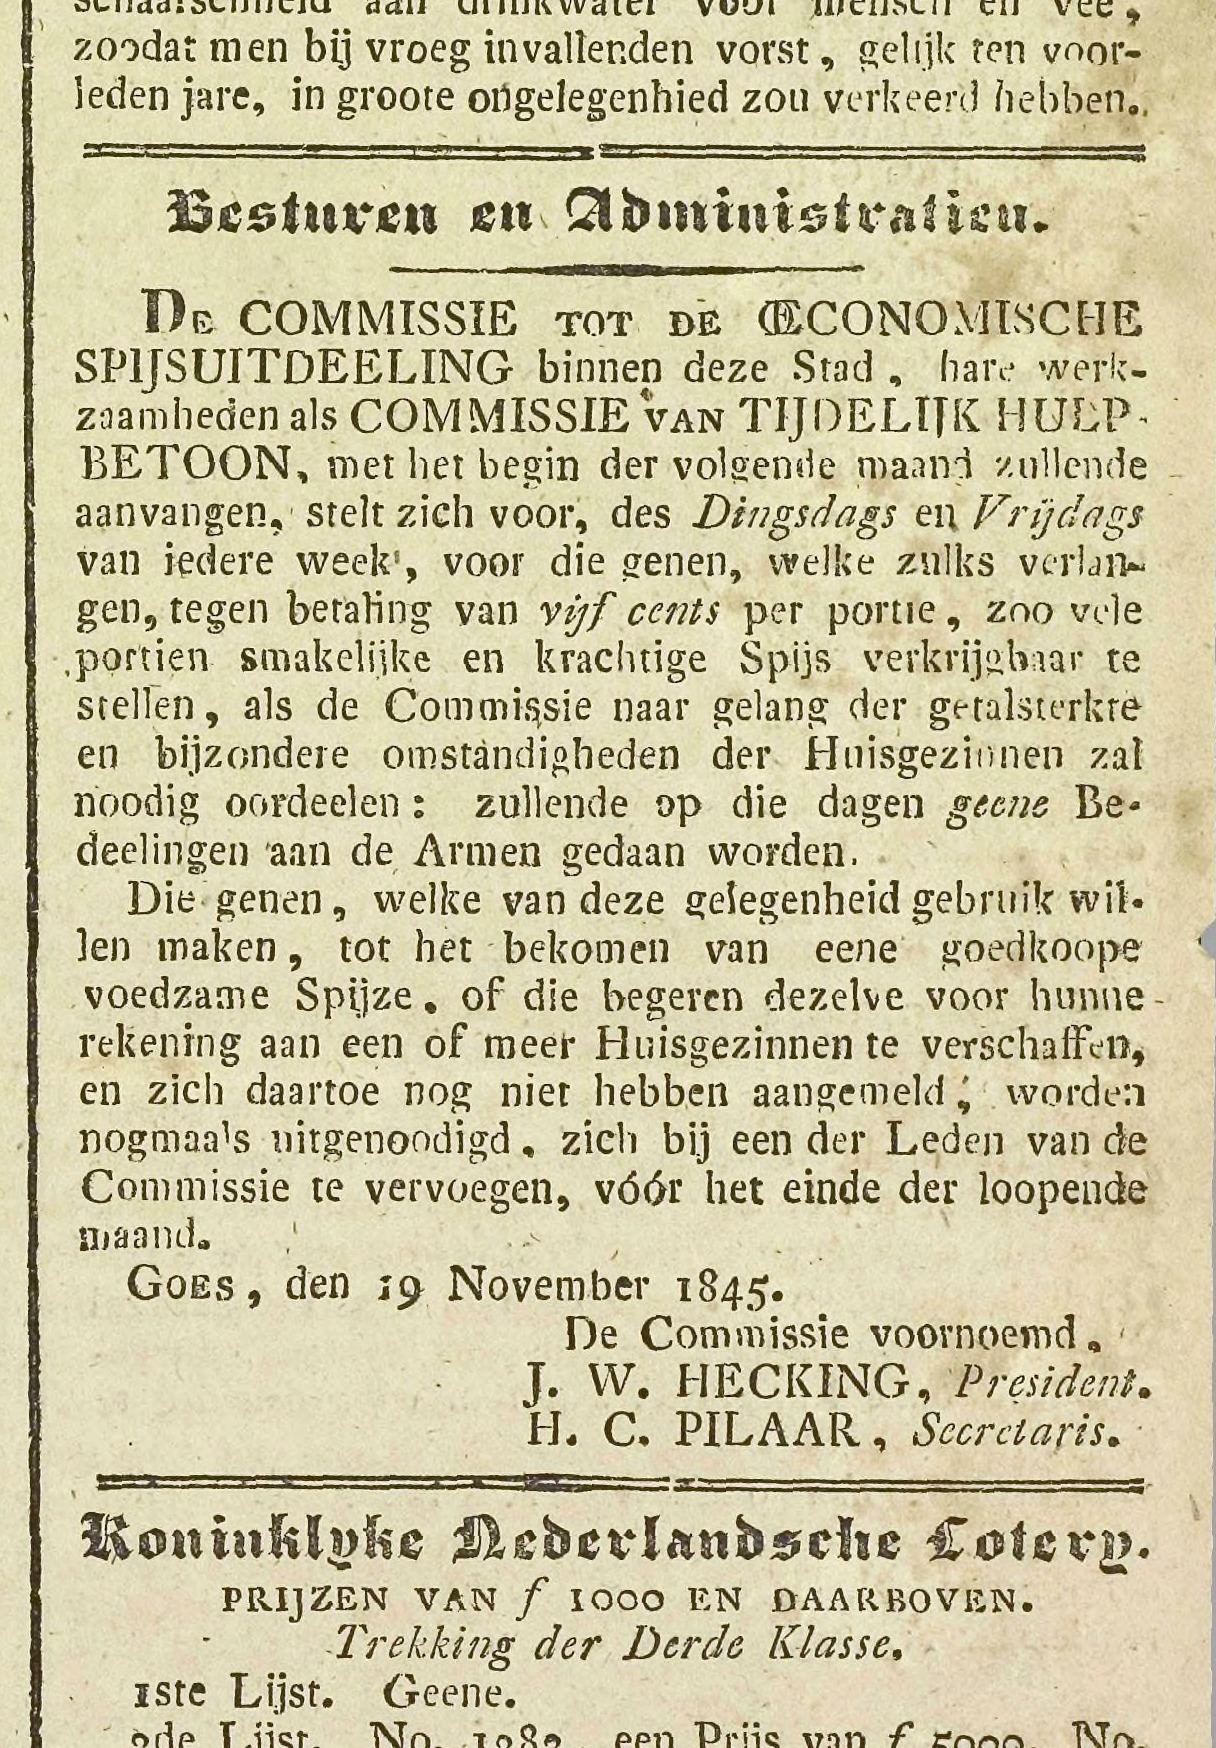  Krantenartikel over de oprichting van de commissie tot spijsuitdeling, Goessche Courant 20 november 1845.